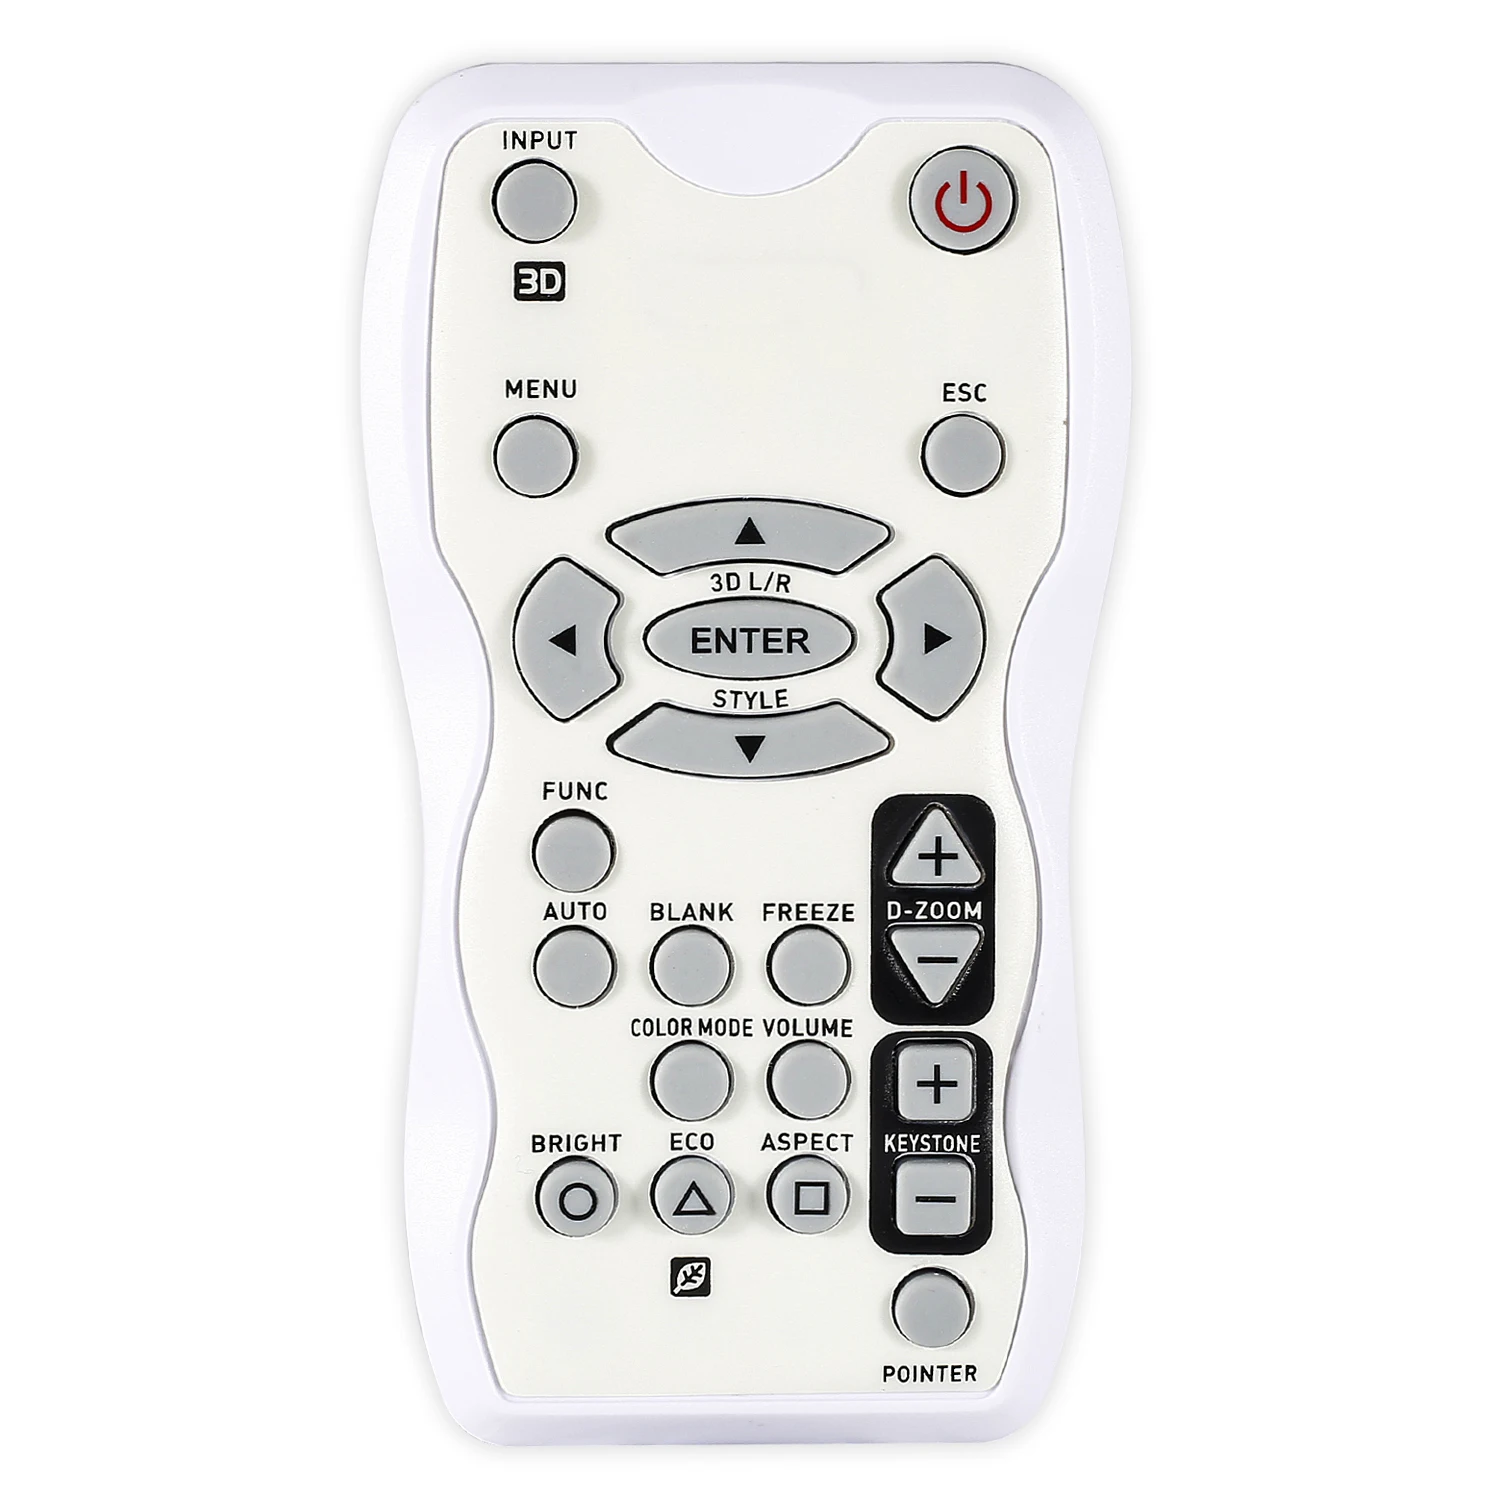 Remote Control for Casio Projector XJ-A146XJ-A141XJ-H2650XJ-H2600 